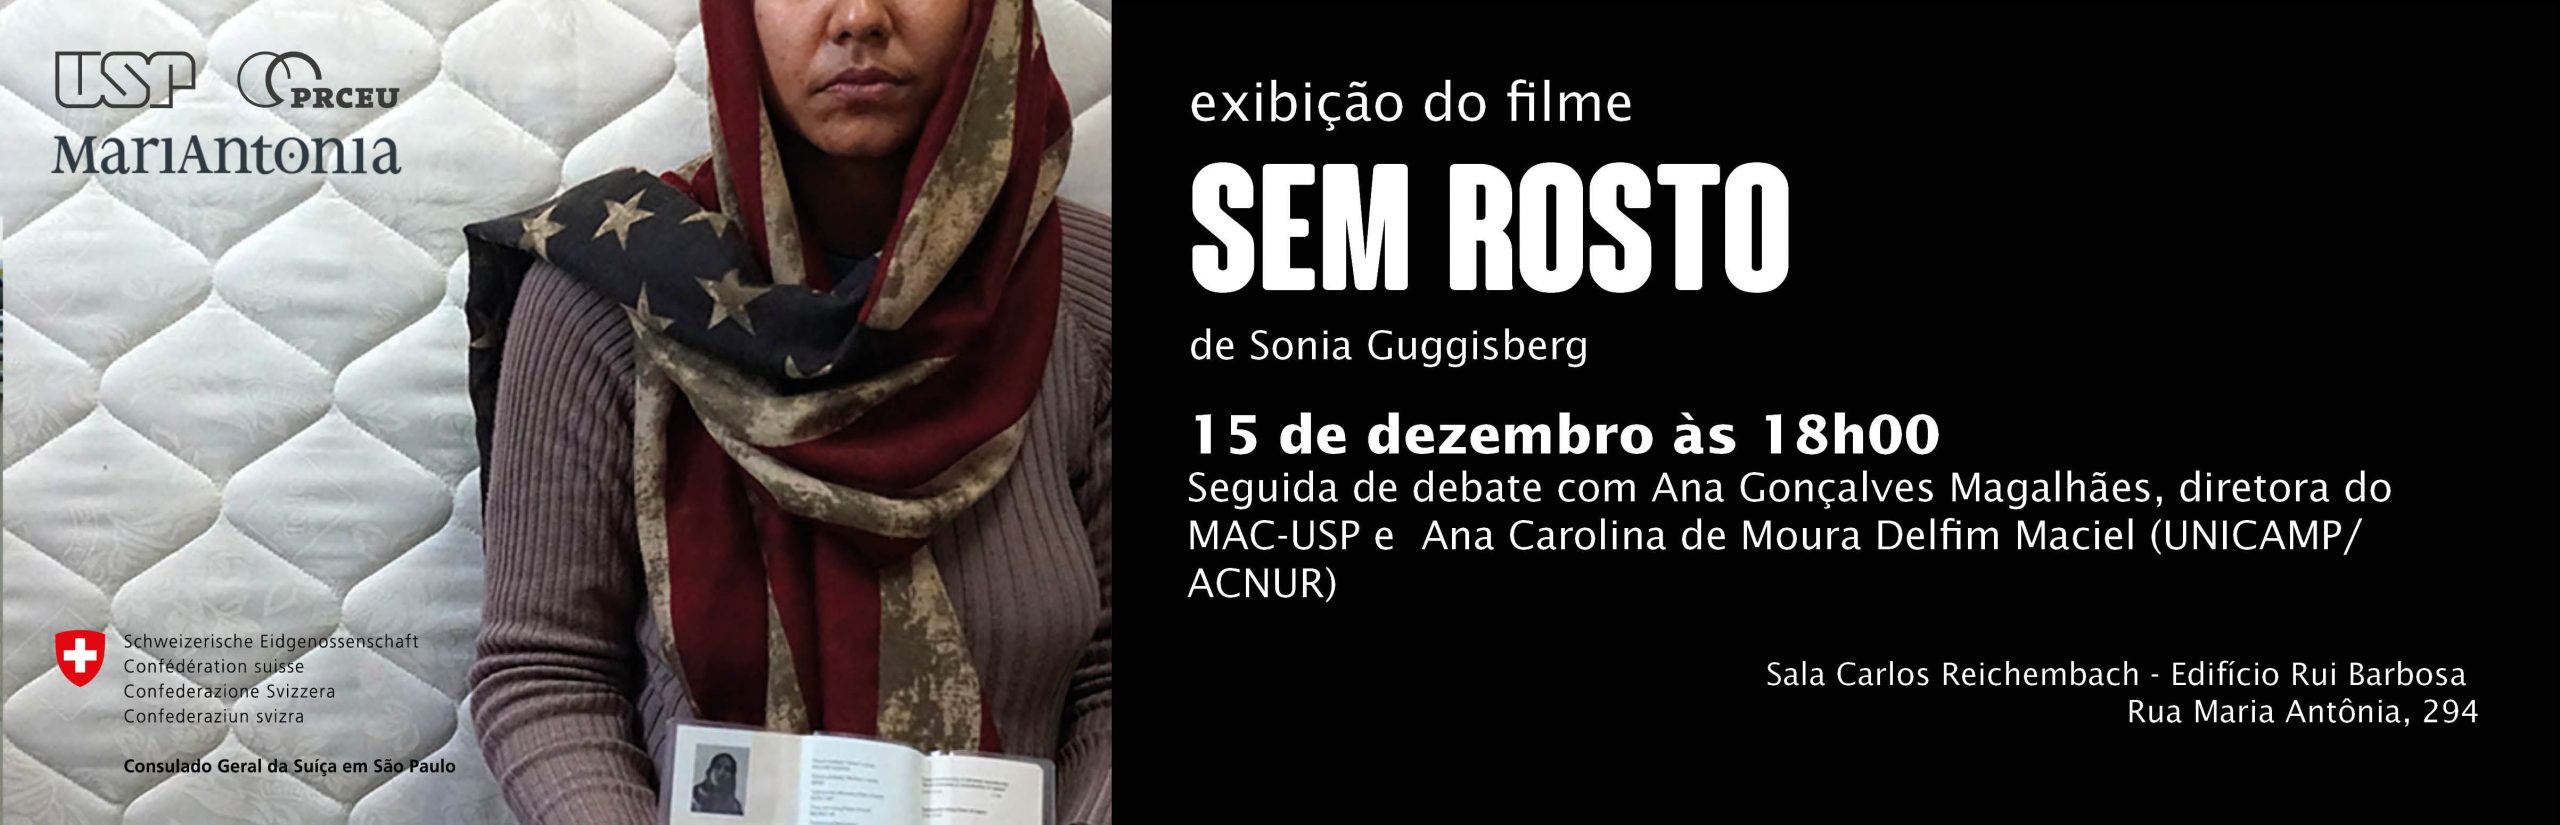 Exibição e debate do filme “Sem rosto” de Sonia Guggisberg